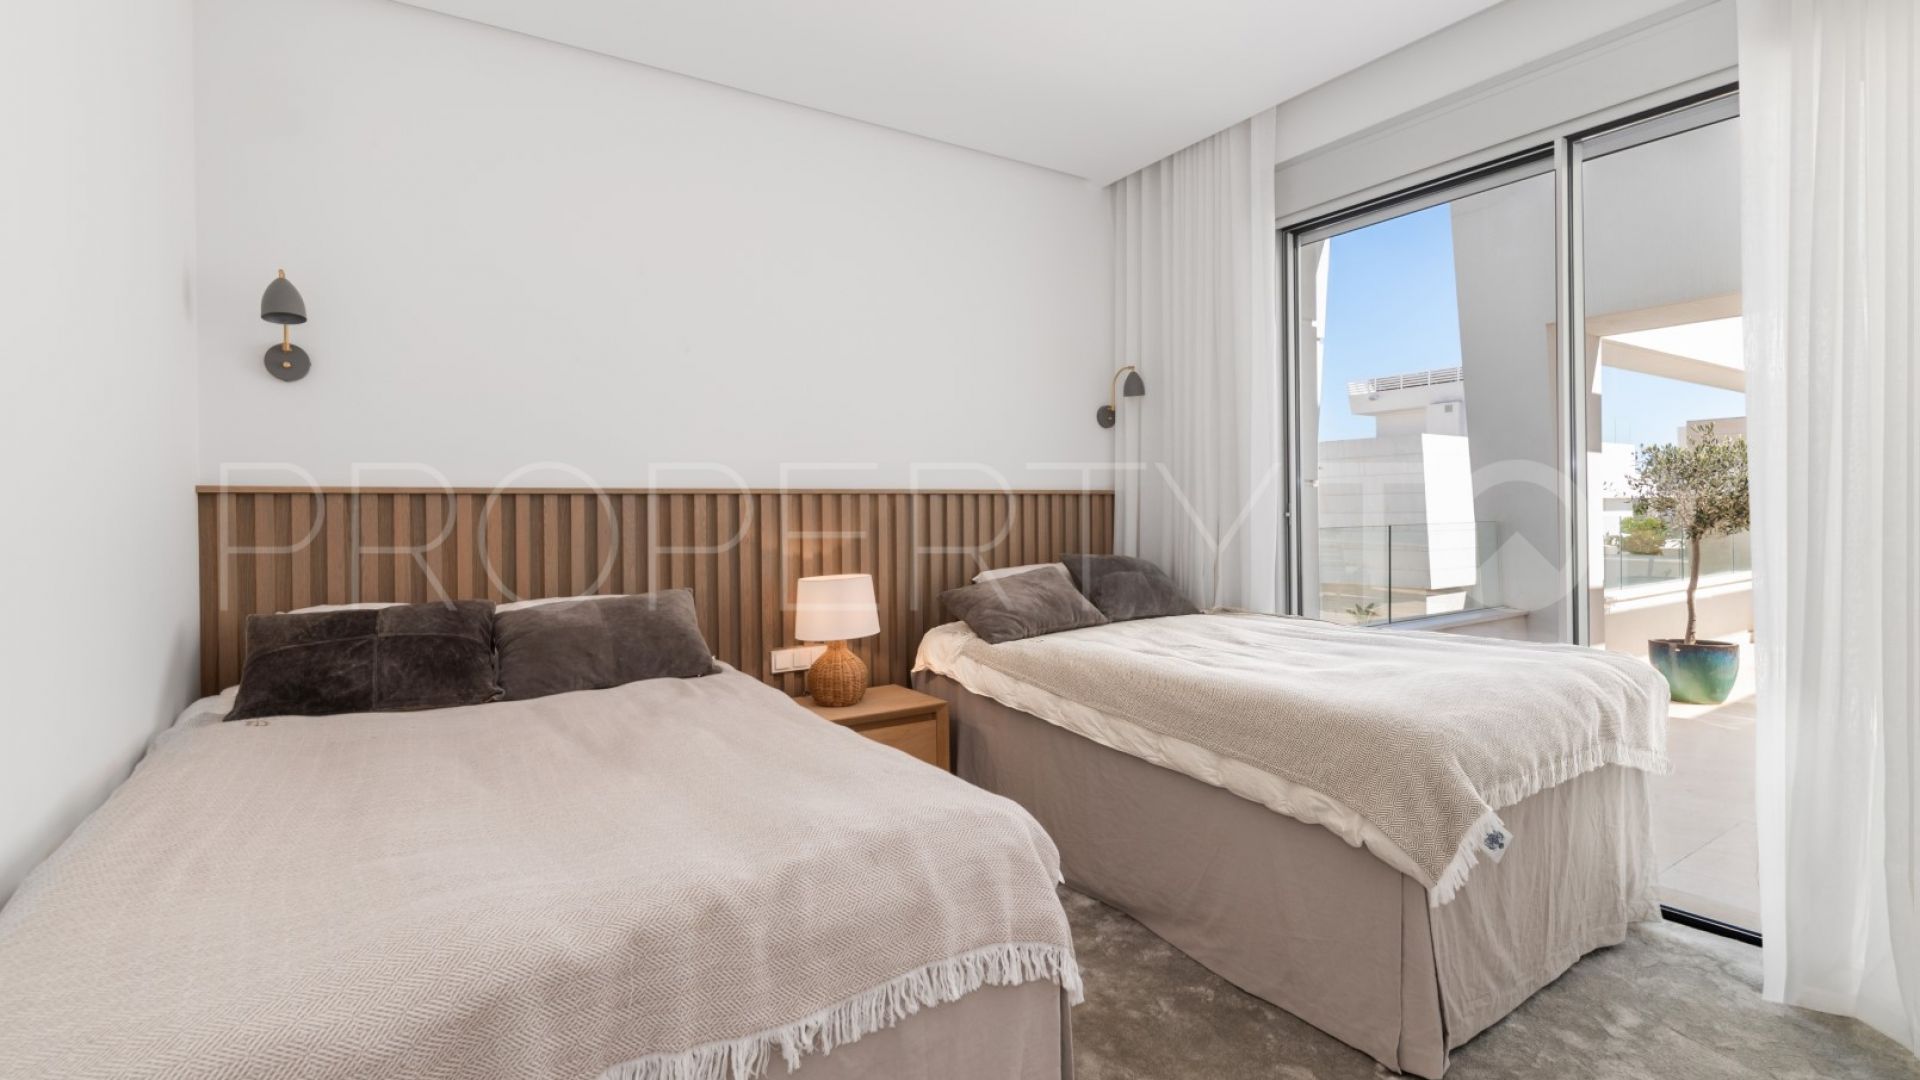 Buy villa in Perlas del Mar with 5 bedrooms